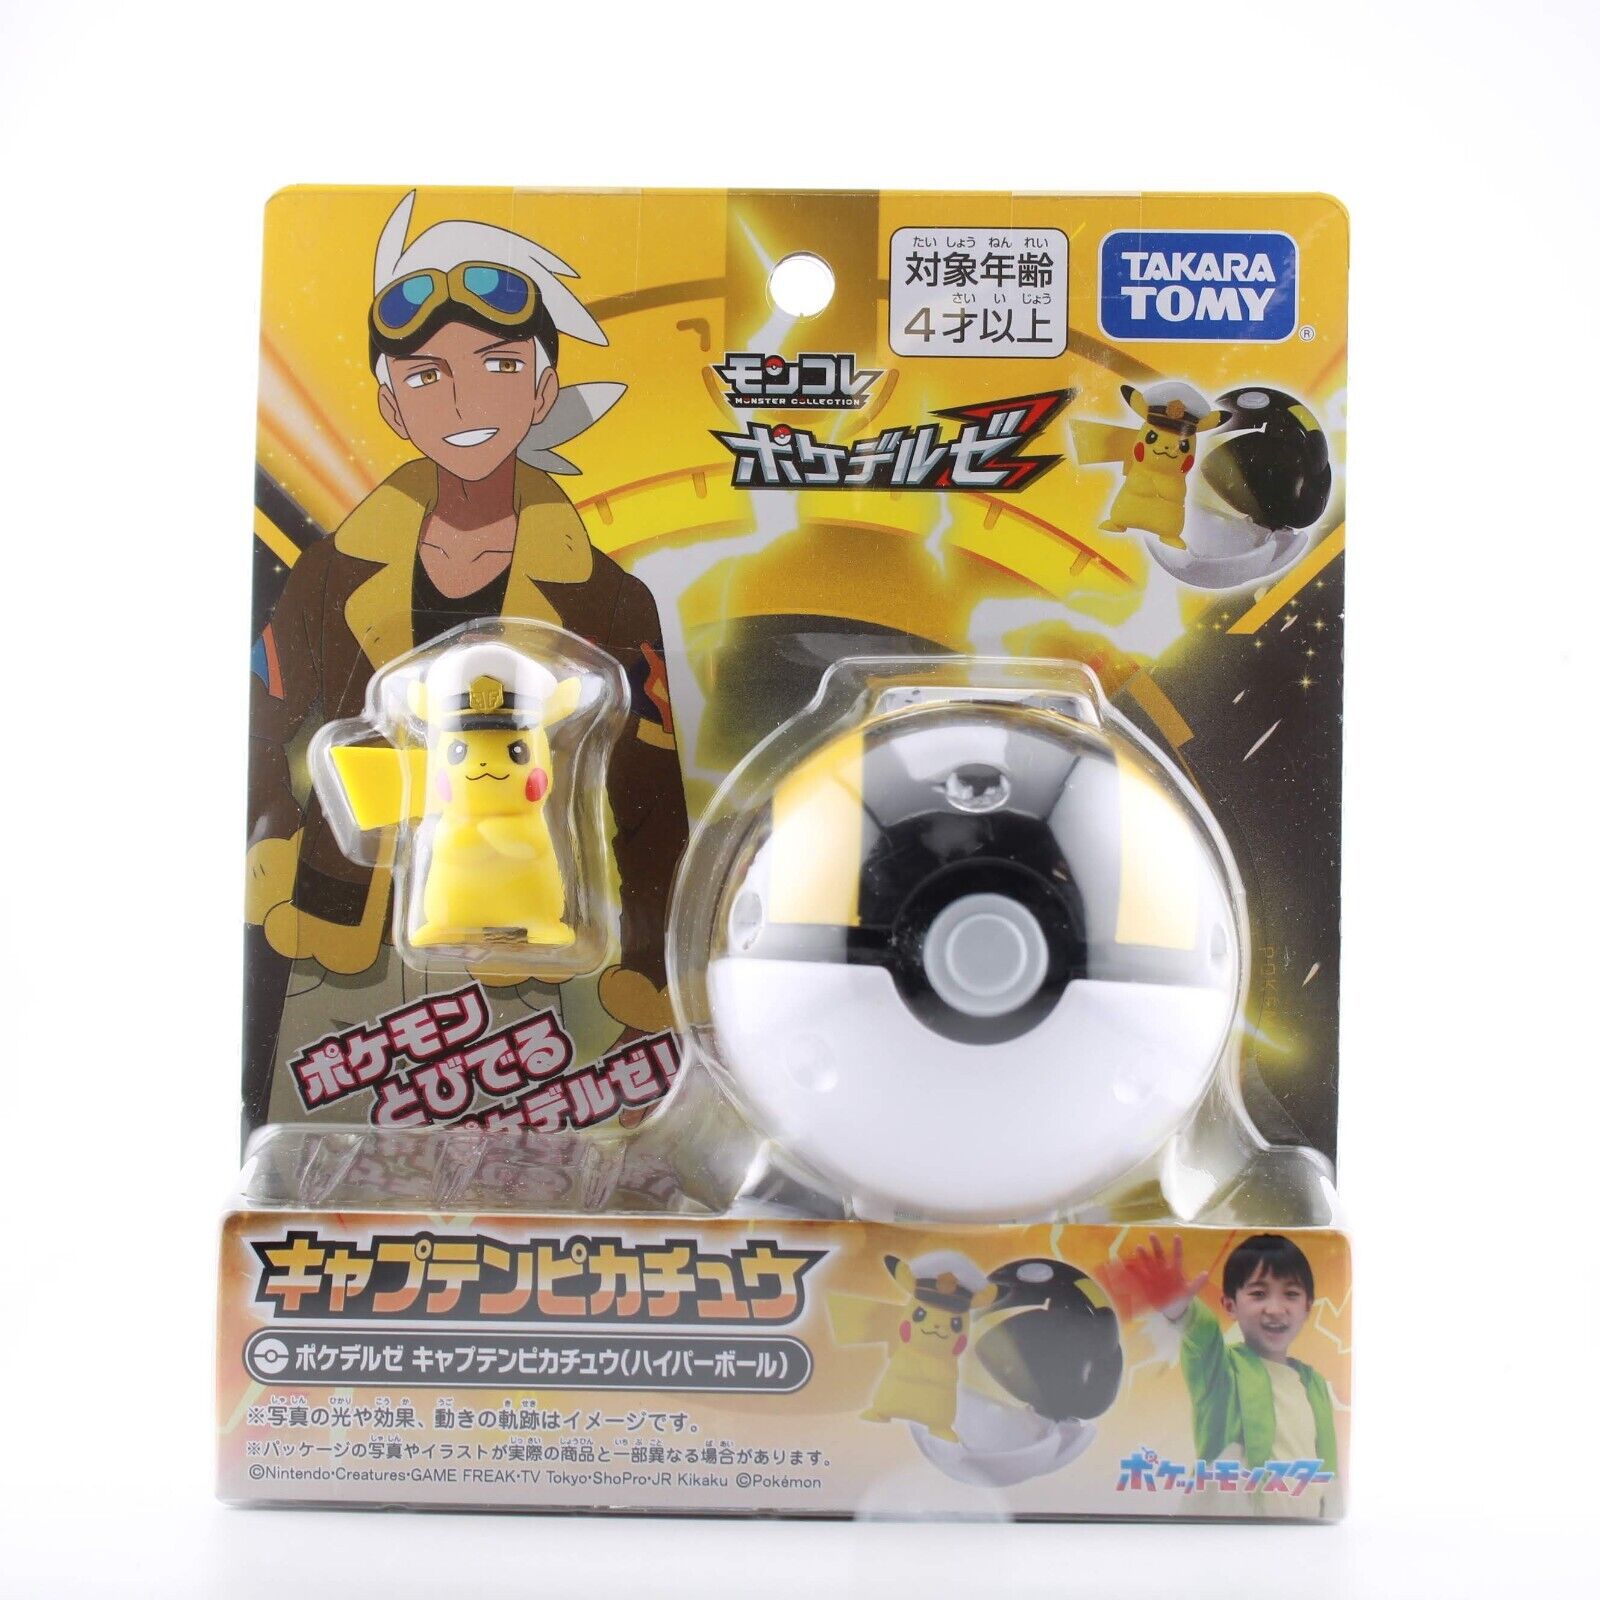 Pokémon Pop Action Pikachu Poke Ball Merchandise